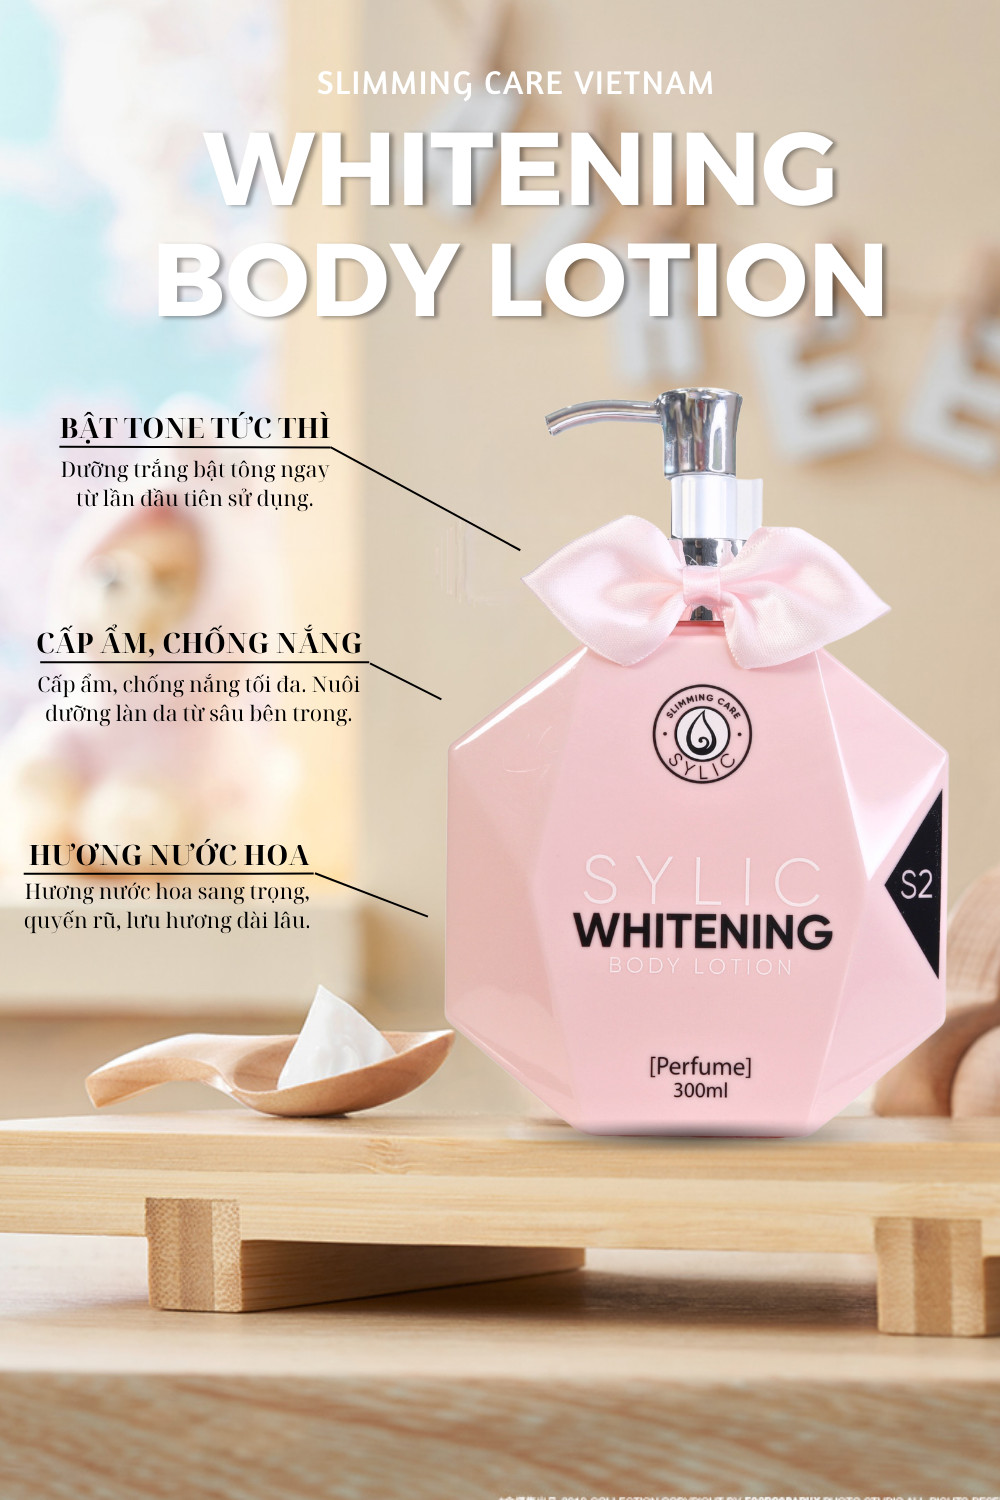 Kem Dưỡng Trắng Da SYLIC Whitening Body Lotion Full Size Hương nước hoa - Dưỡng trắng, cấp ẩm, chống nắng